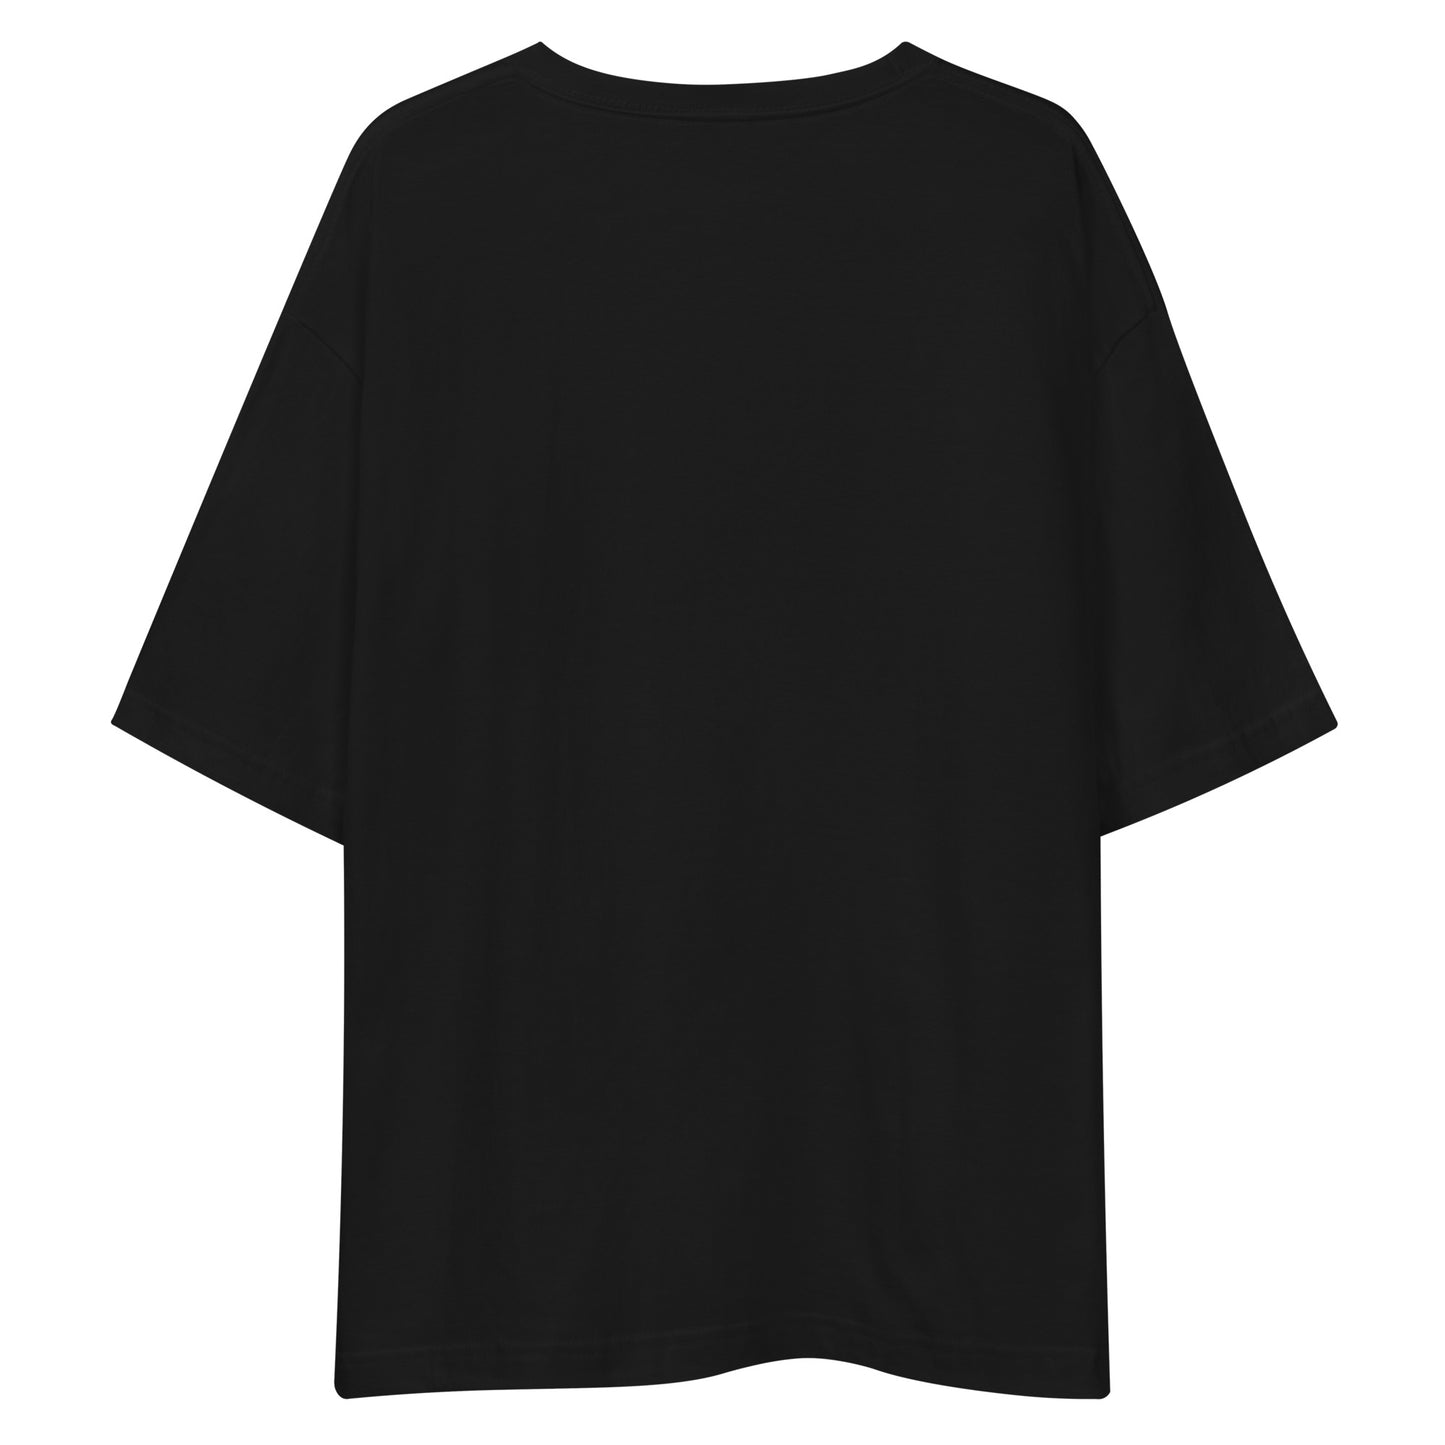 E245 - เสื้อยืด/ภาพเงาใหญ่ (วิบากชนะ/ผู้หญิง : สีดำ/เงิน)